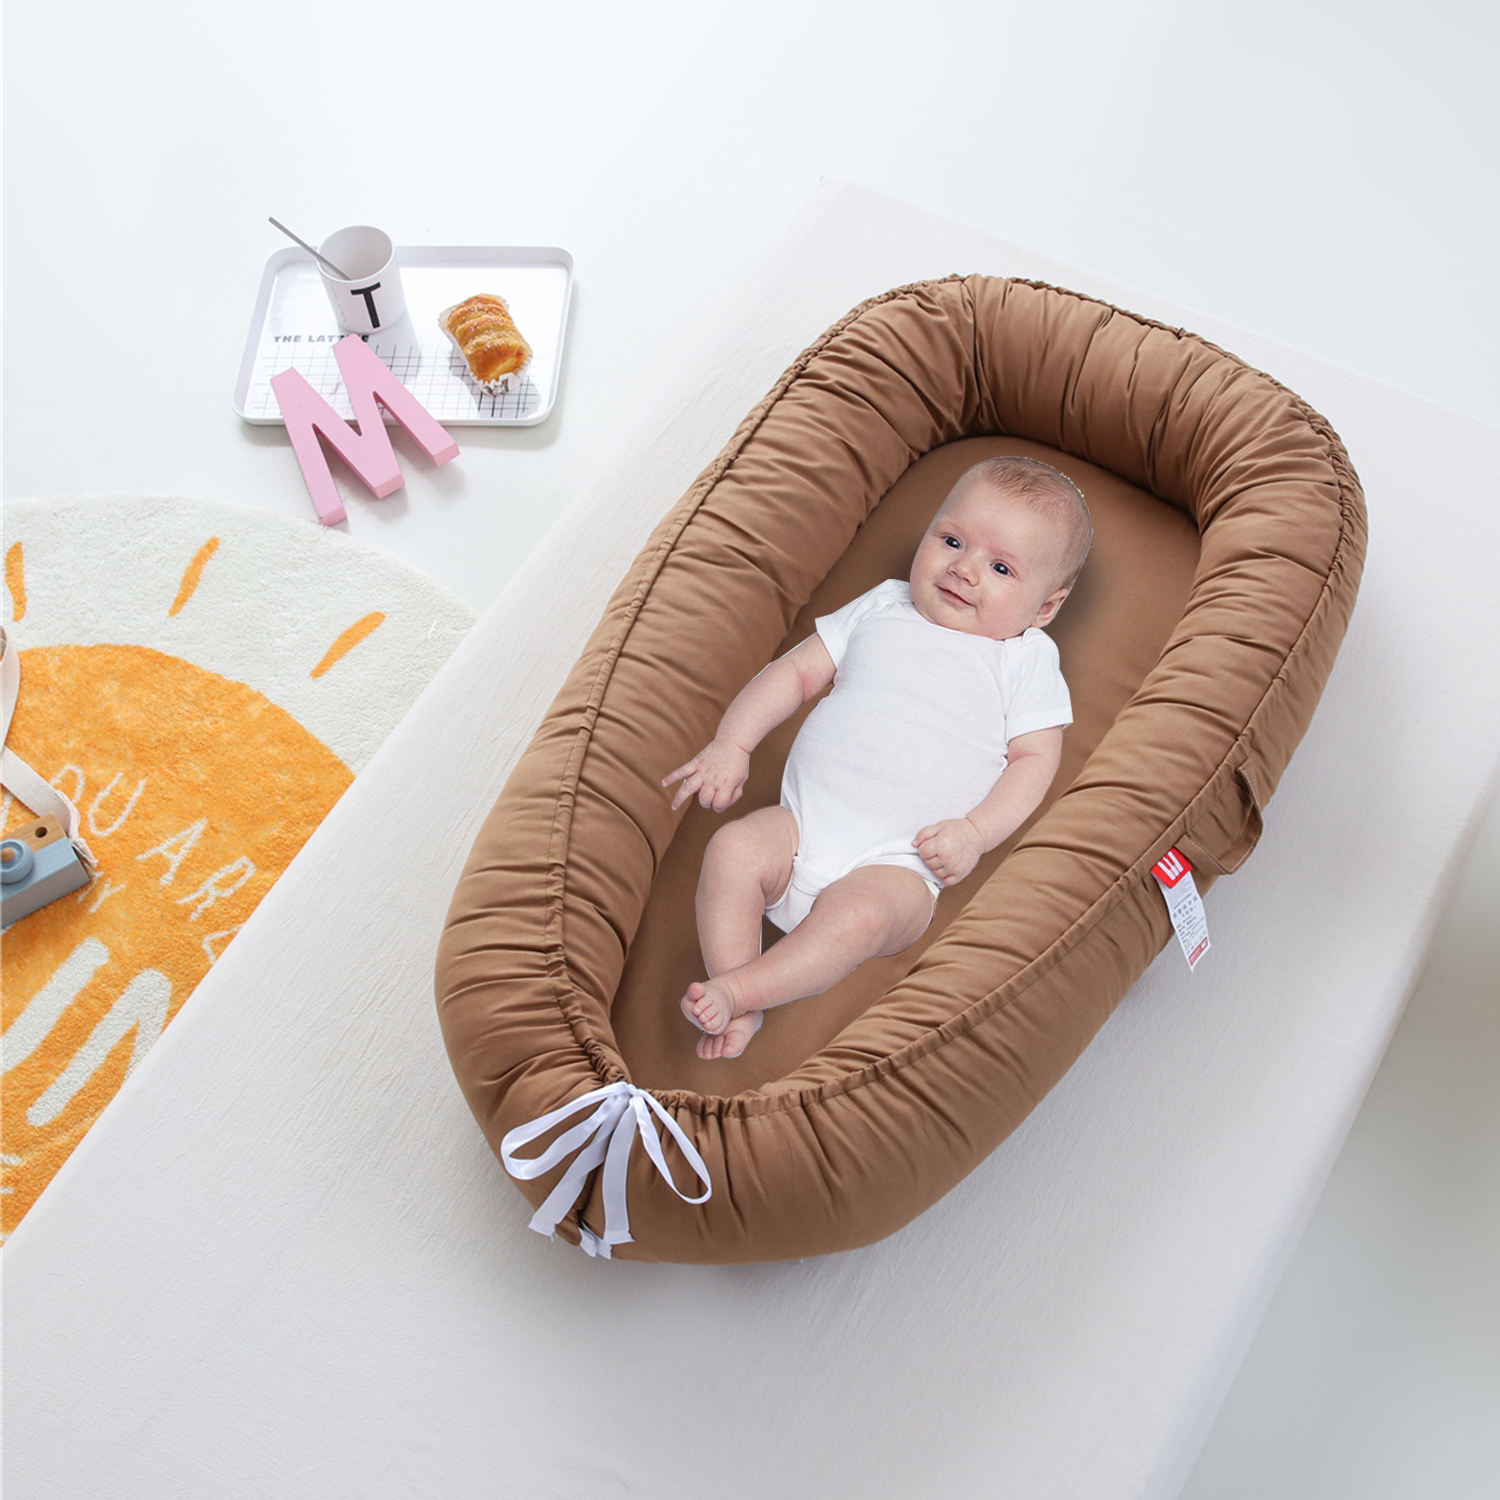  Tumbona para bebé para recién nacido, tumbona para recién  nacidos de 0 a 12 meses, tumbona transpirable y portátil, asiento ajustable  de algodón suave para el suelo del bebé para viajes